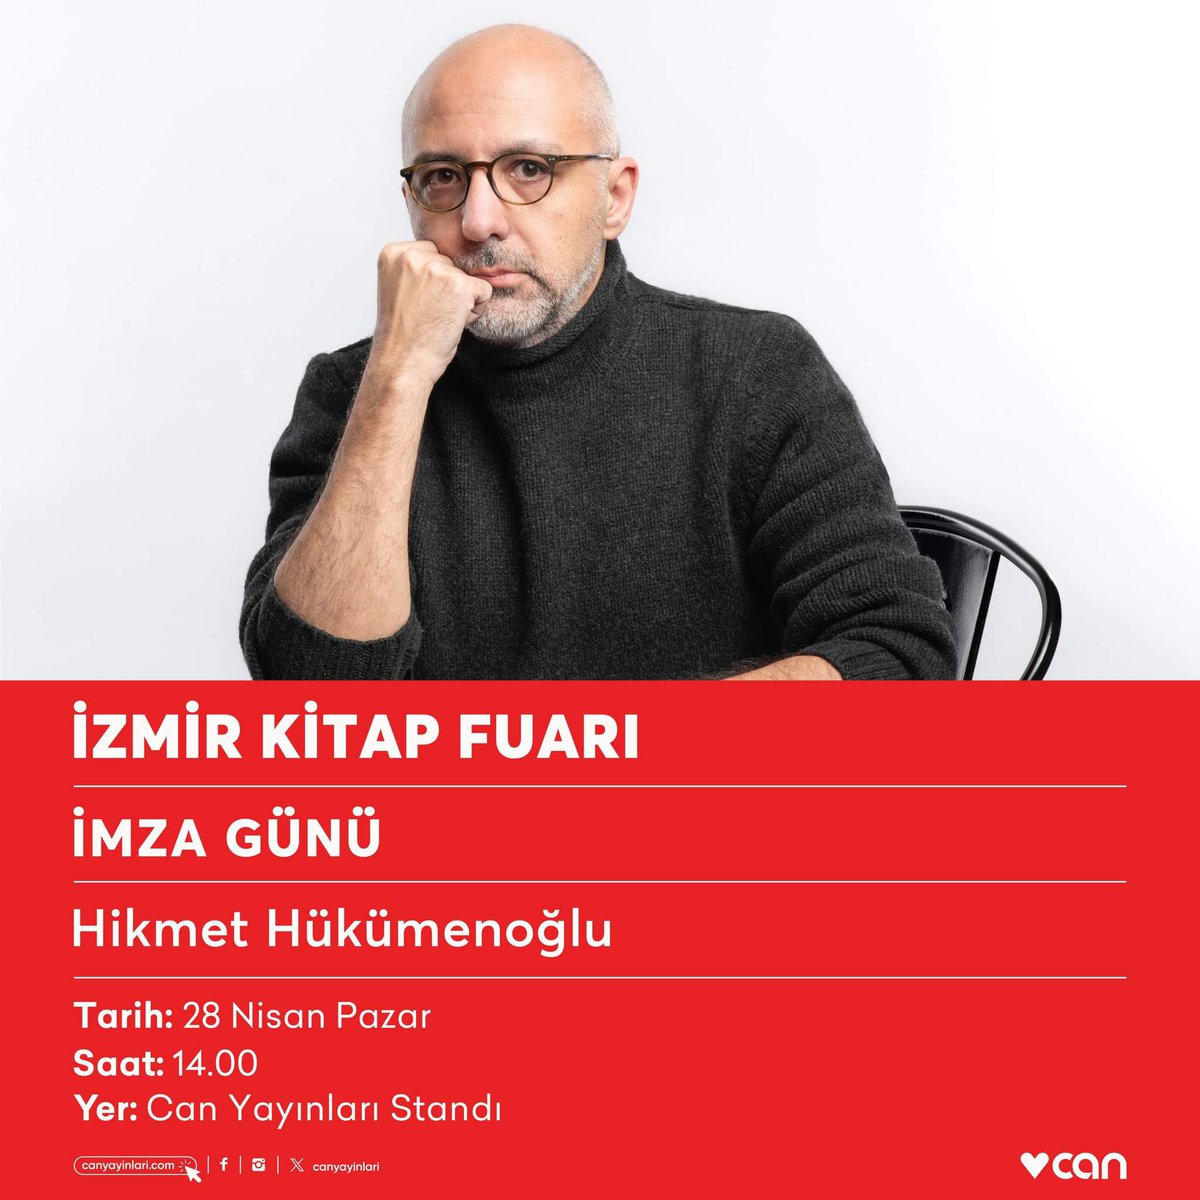 Hikmet Hükümenoğlu, 28 Nisan Pazar günü saat 14.00’te #İzmirKitapFuarı Can Yayınları standında okurlarıyla buluşacak.